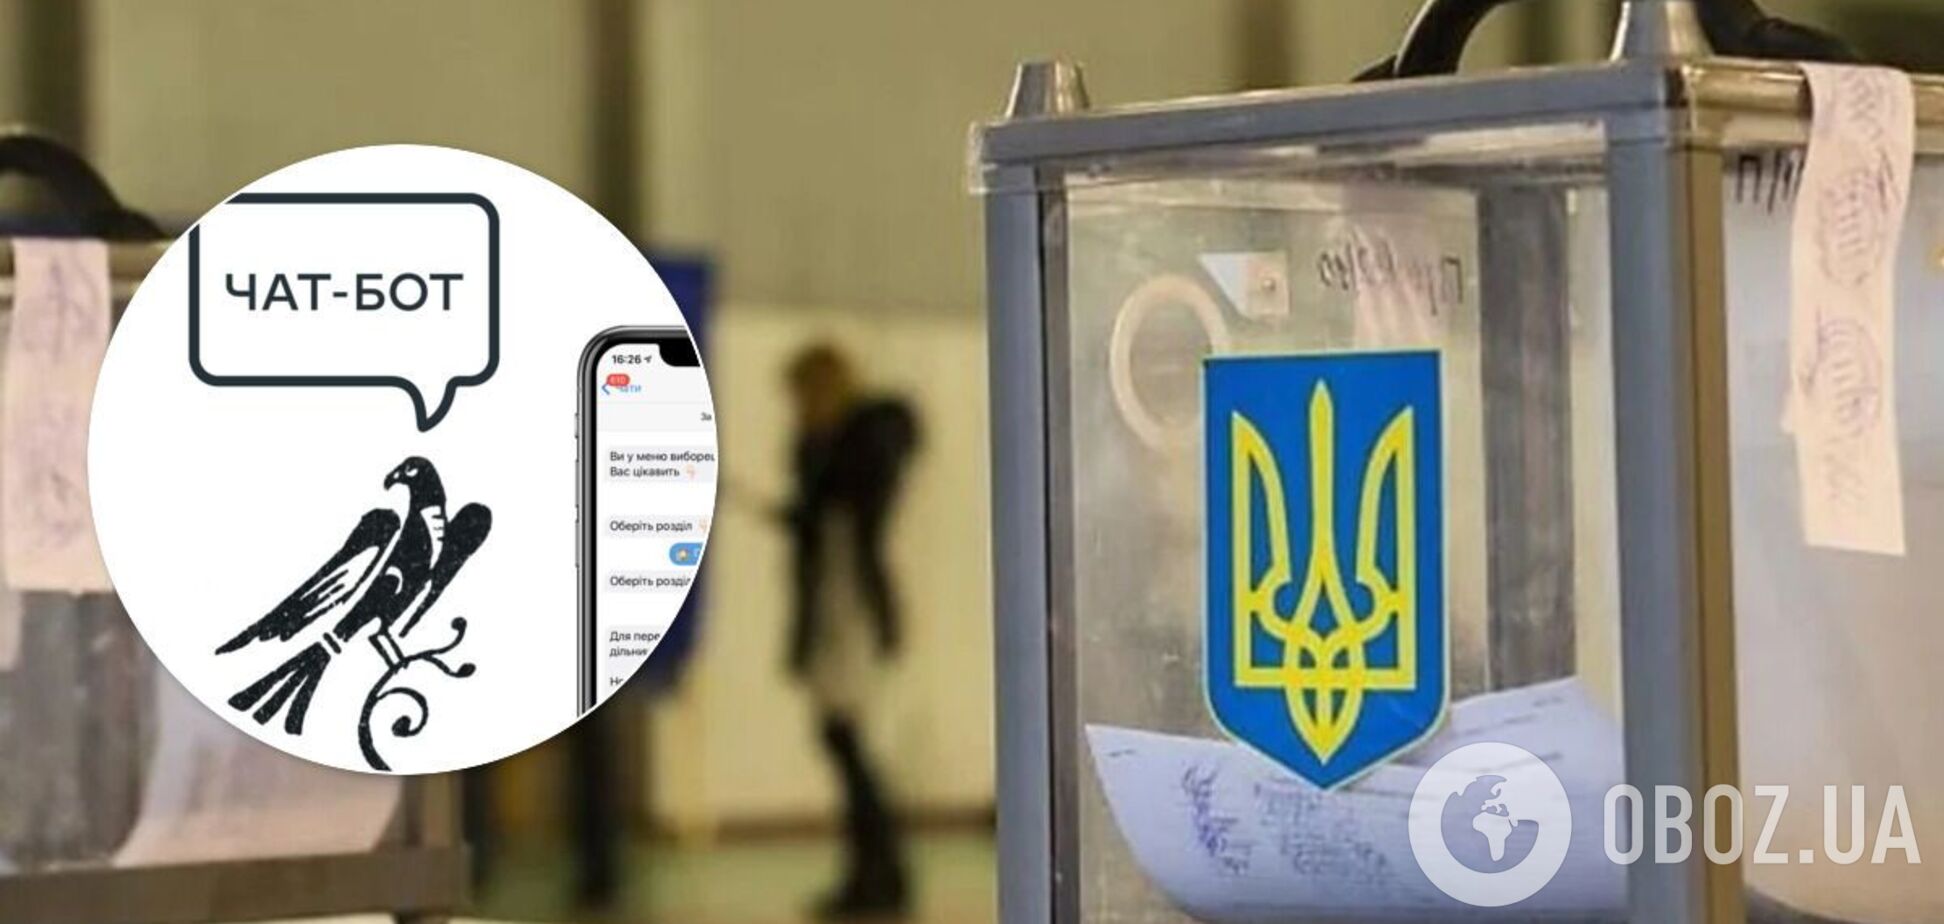 Как найти кандидата на местных выборах: ЦВК показала, как работает чат-бот в Телеграмме